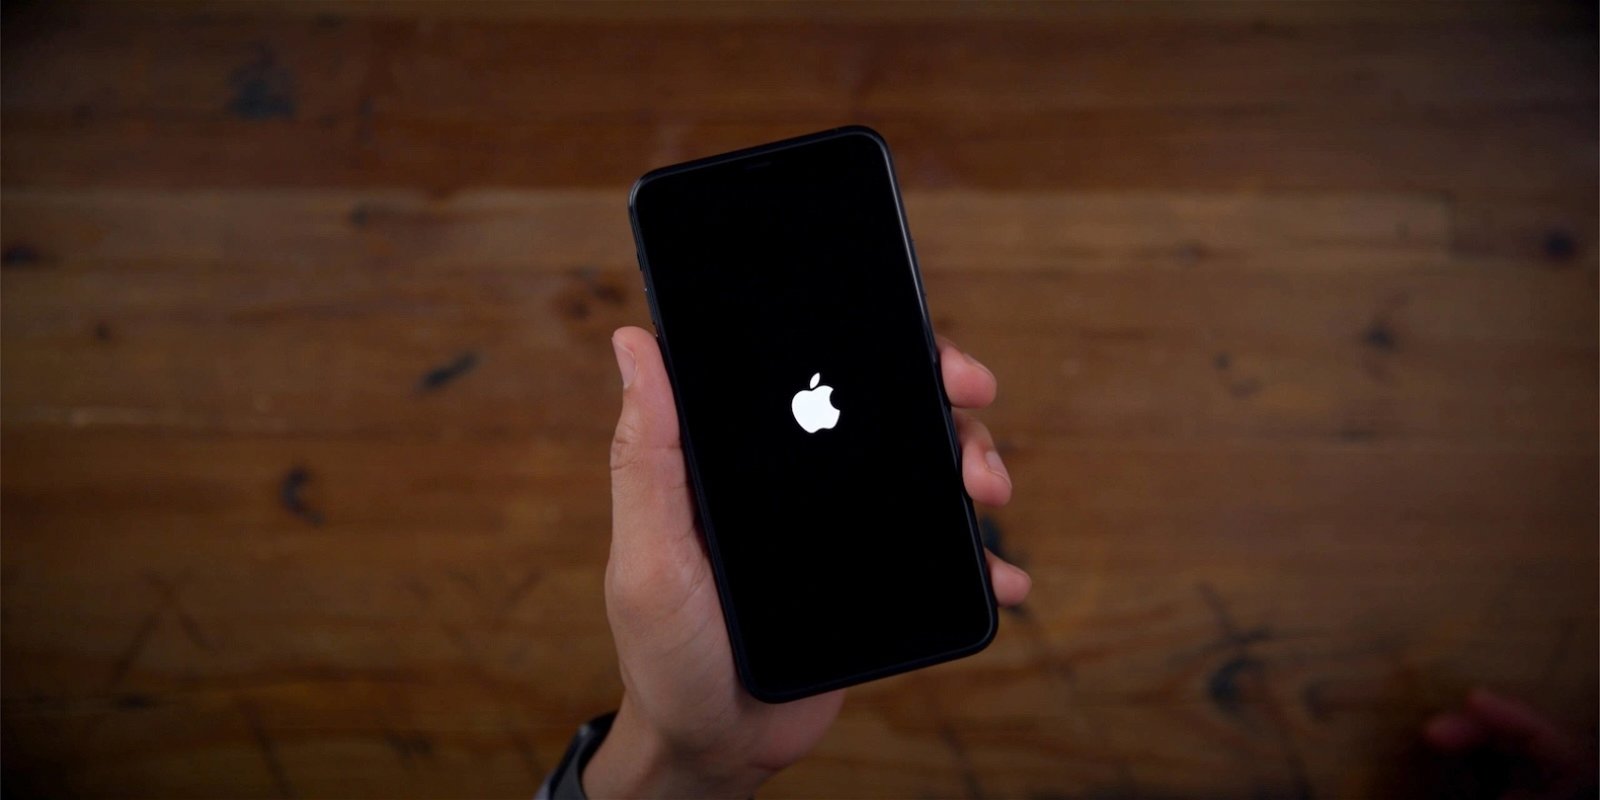 iPhone encendiéndose con la manzana como icono